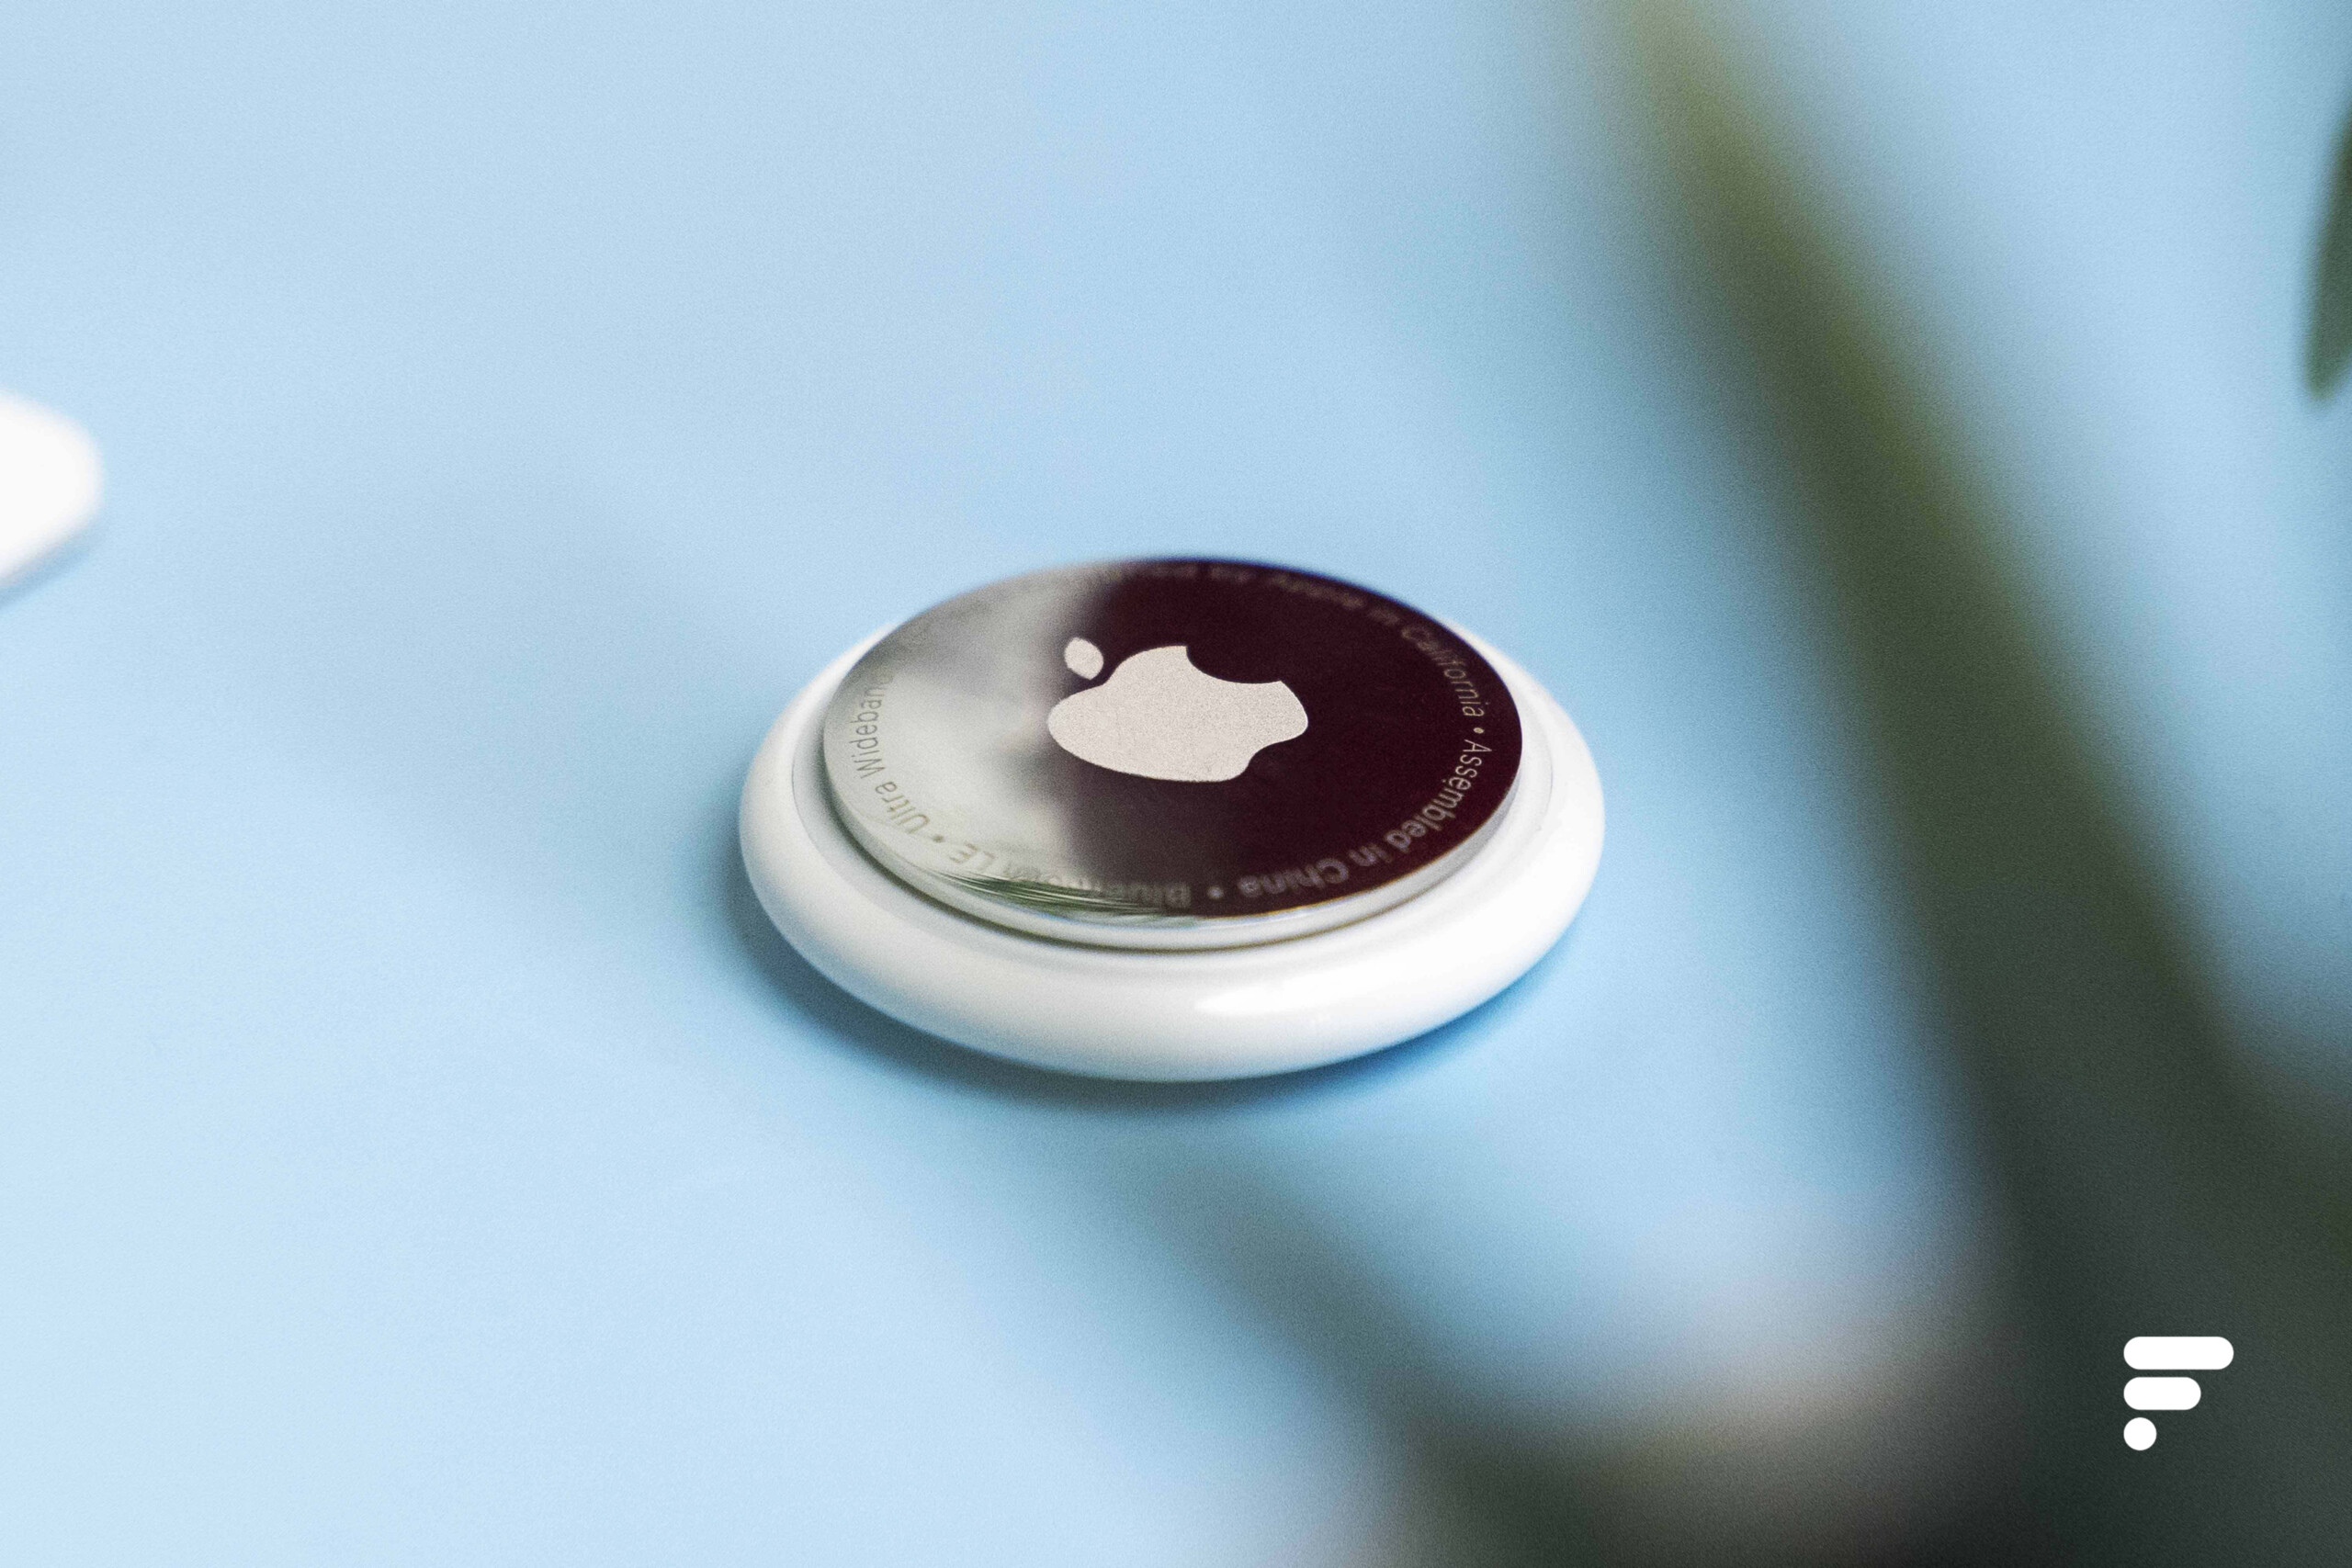 AirTag :  casse le prix de la balise Bluetooth d'Apple juste